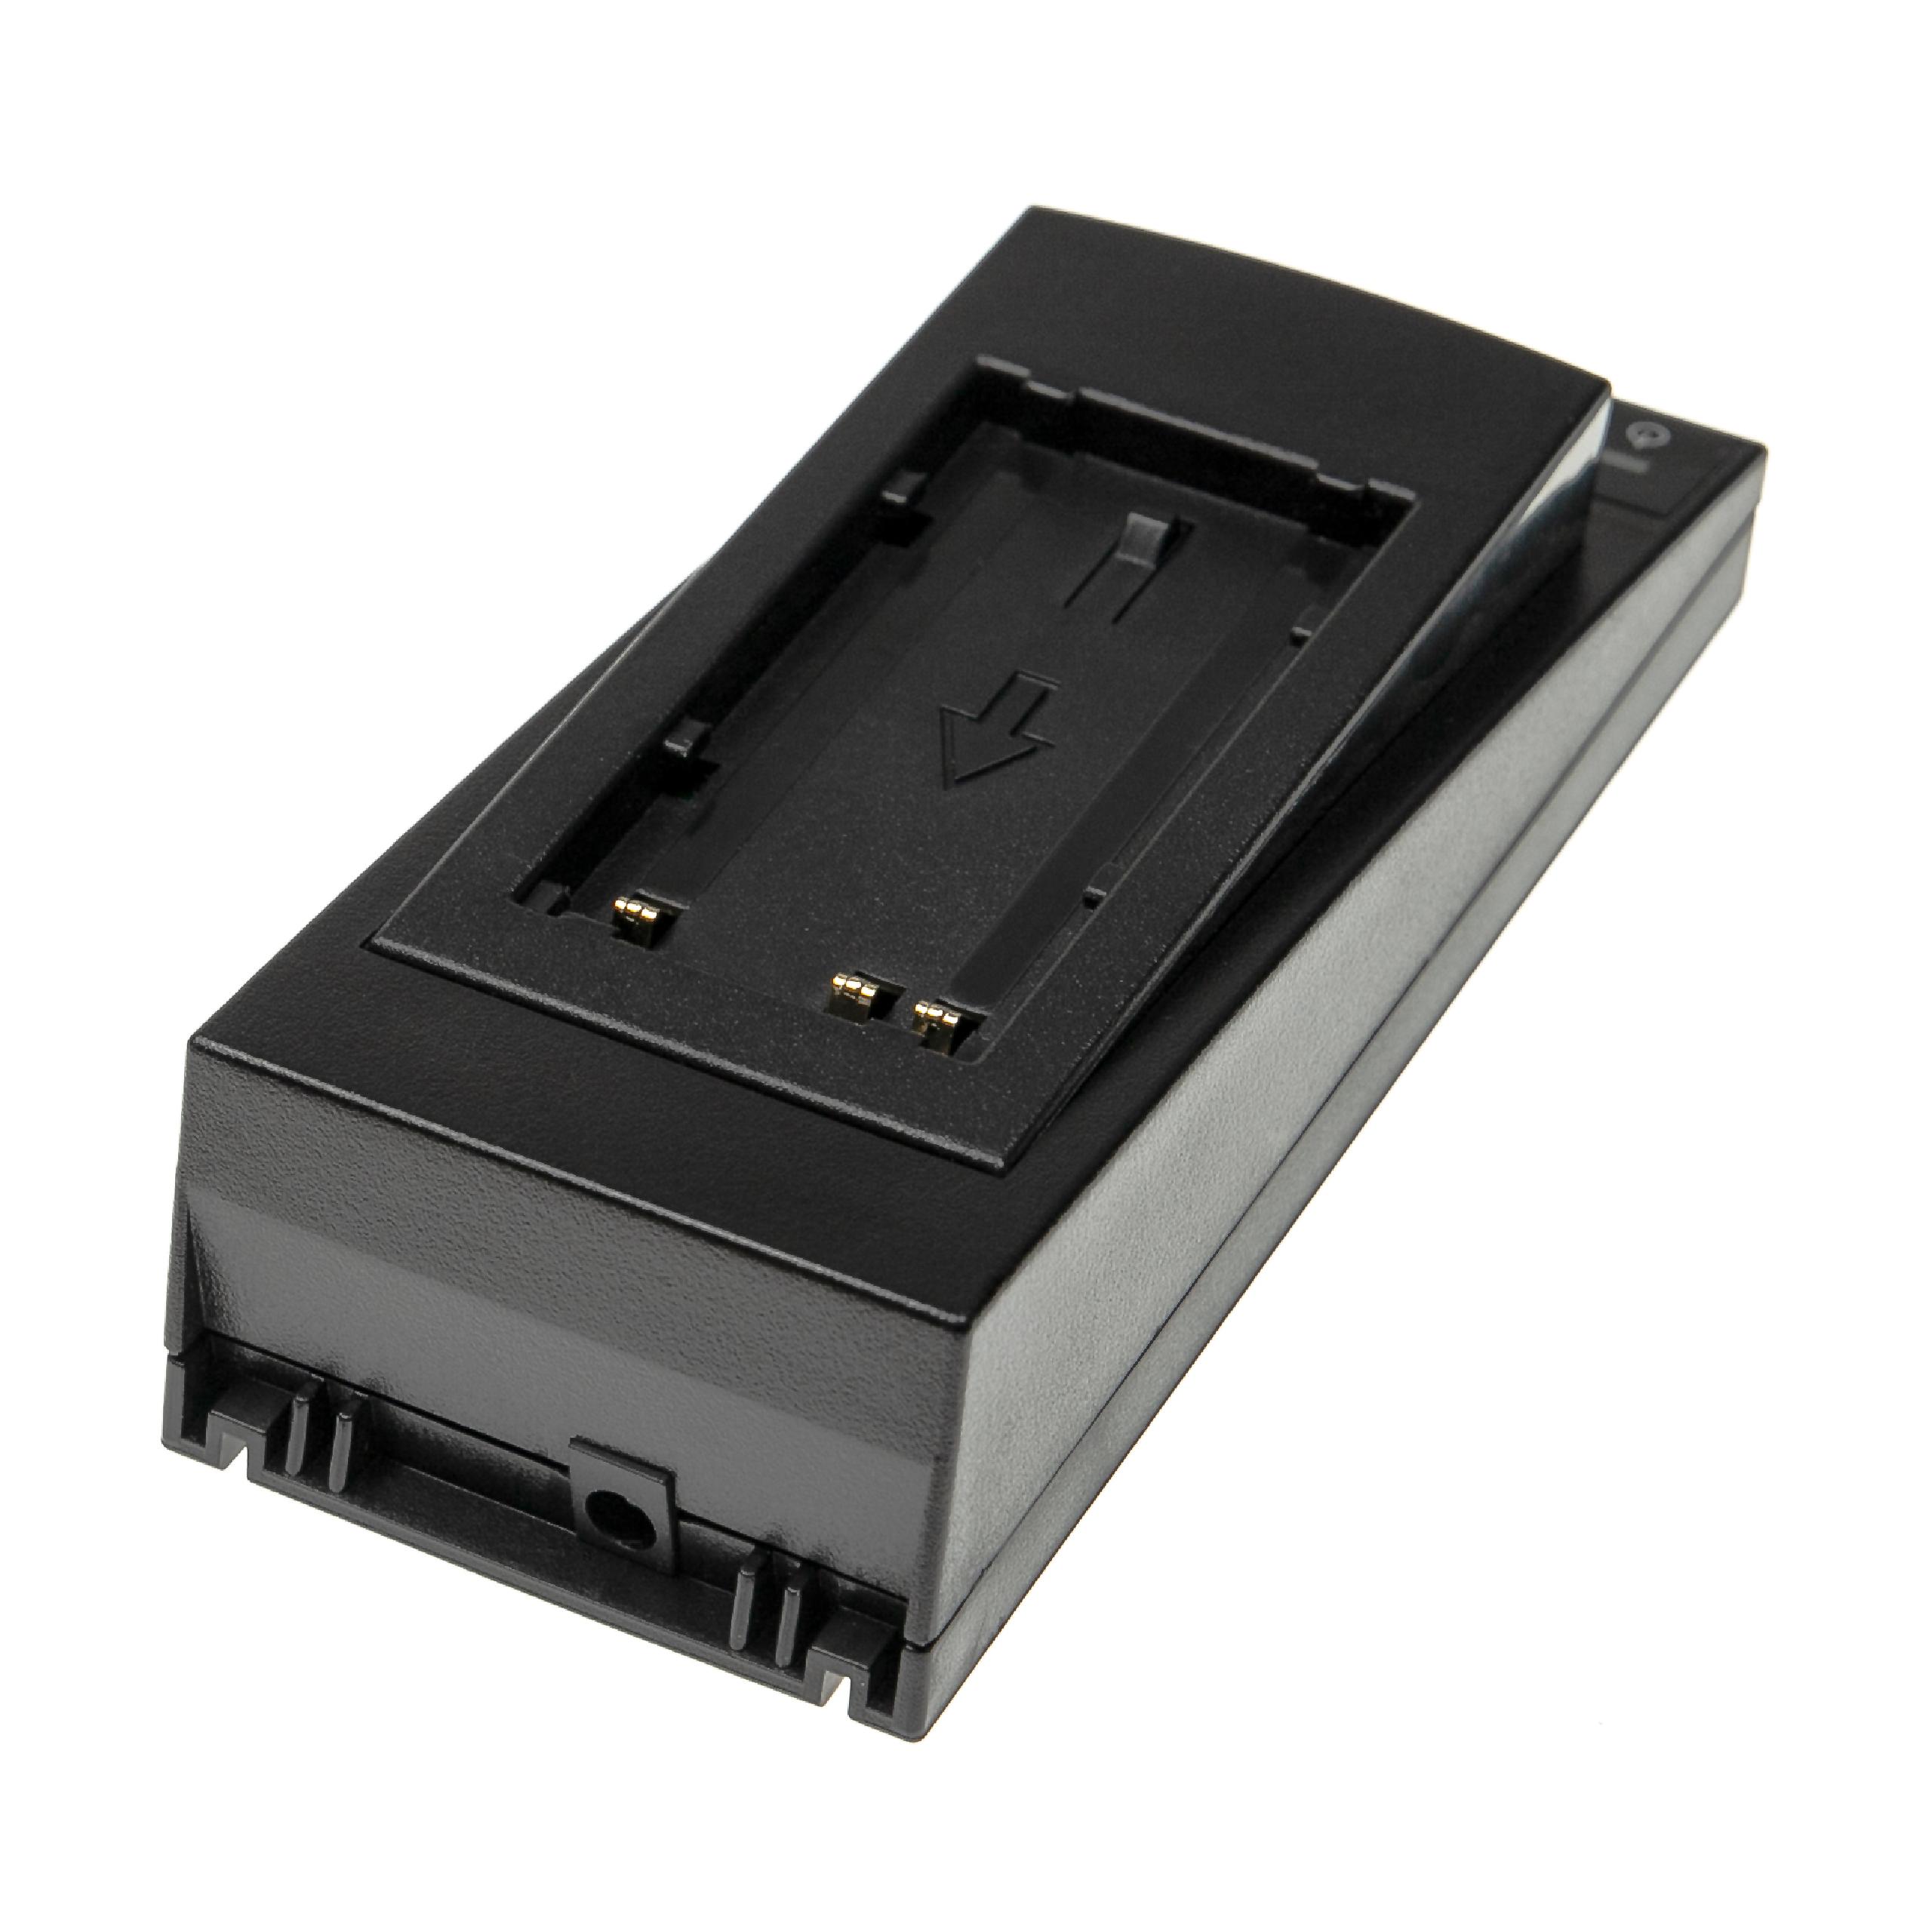 Caricabatterie per dispositivo di misura/batteria Leica - Base di ricarica + Cavo ricarica auto, 7,5 V / 1,5 A